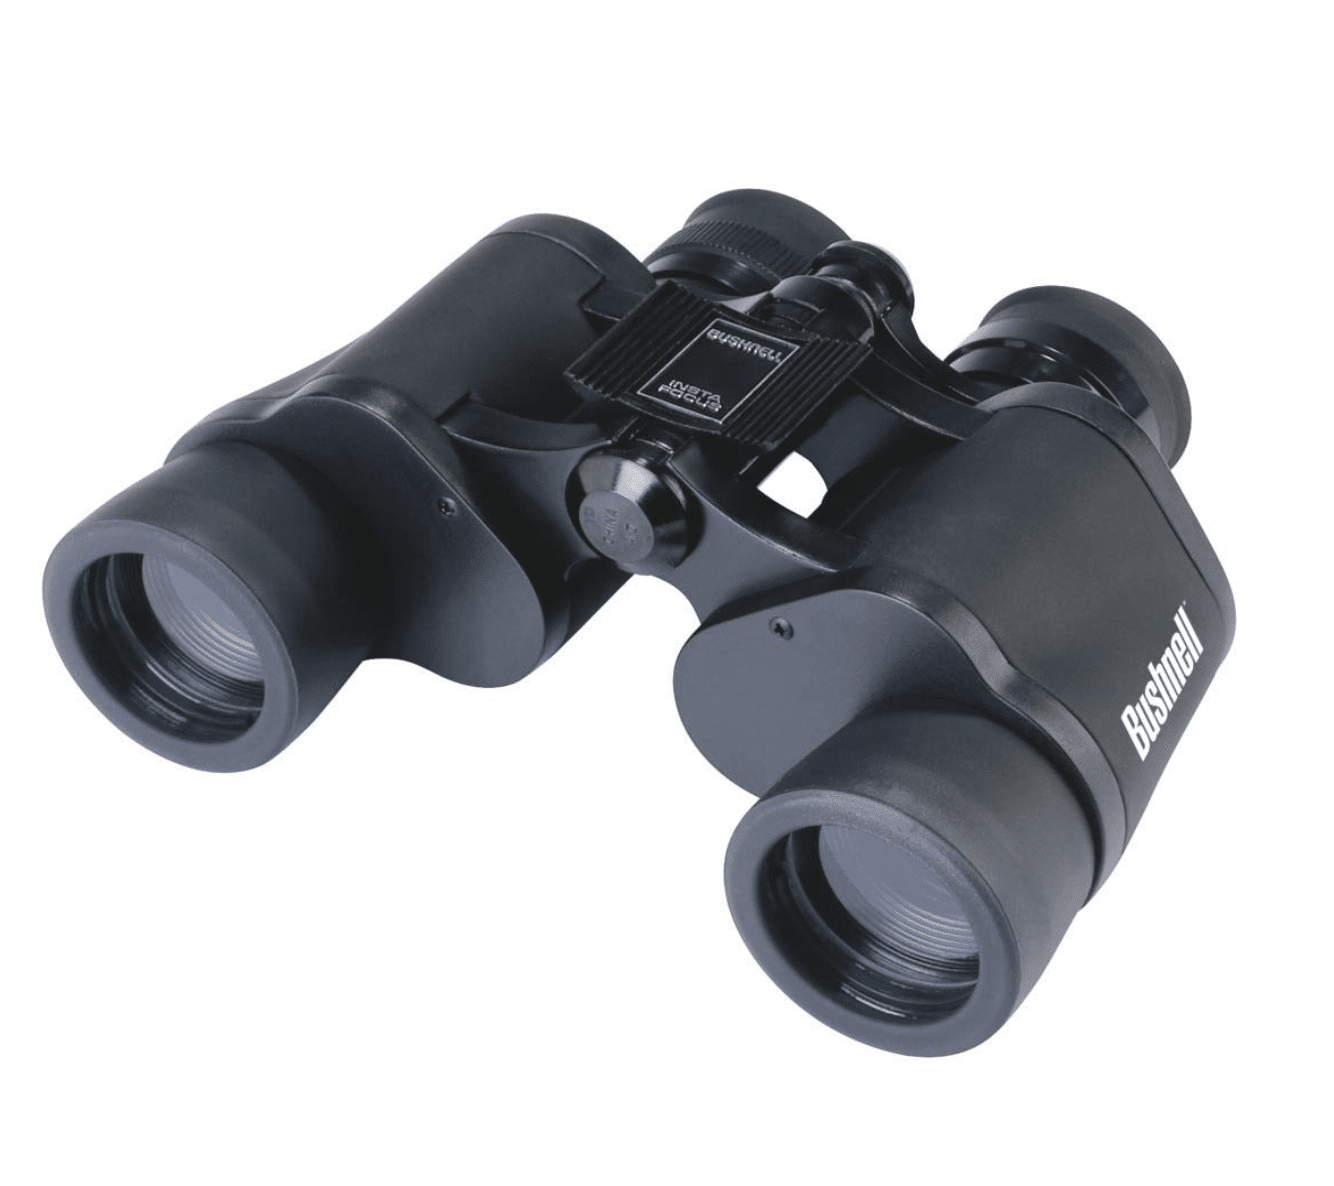 Pair of black binoculars